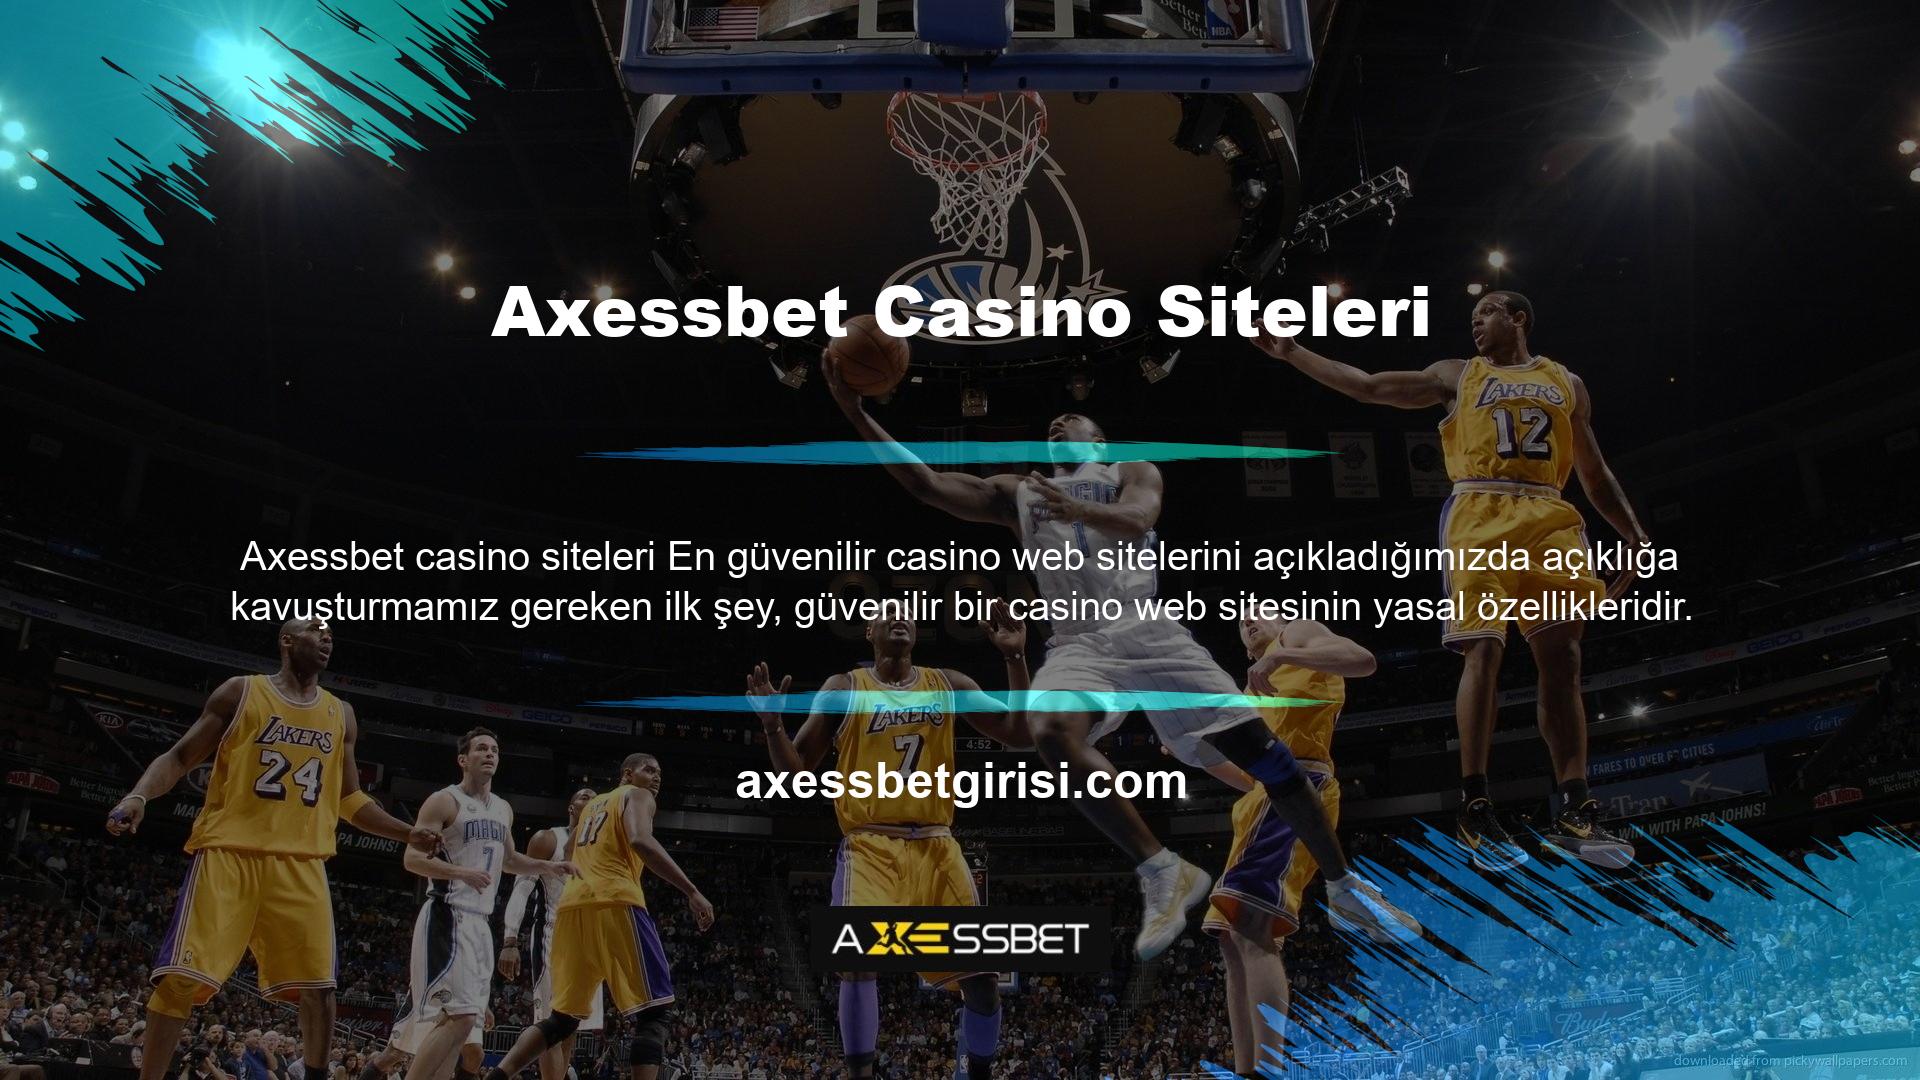 Axessbet Casino web sitesinde bir hesap açmak, para yatırmak ve oyun oynamak istiyorsanız, önce şirket bilgilerini doğrulayın